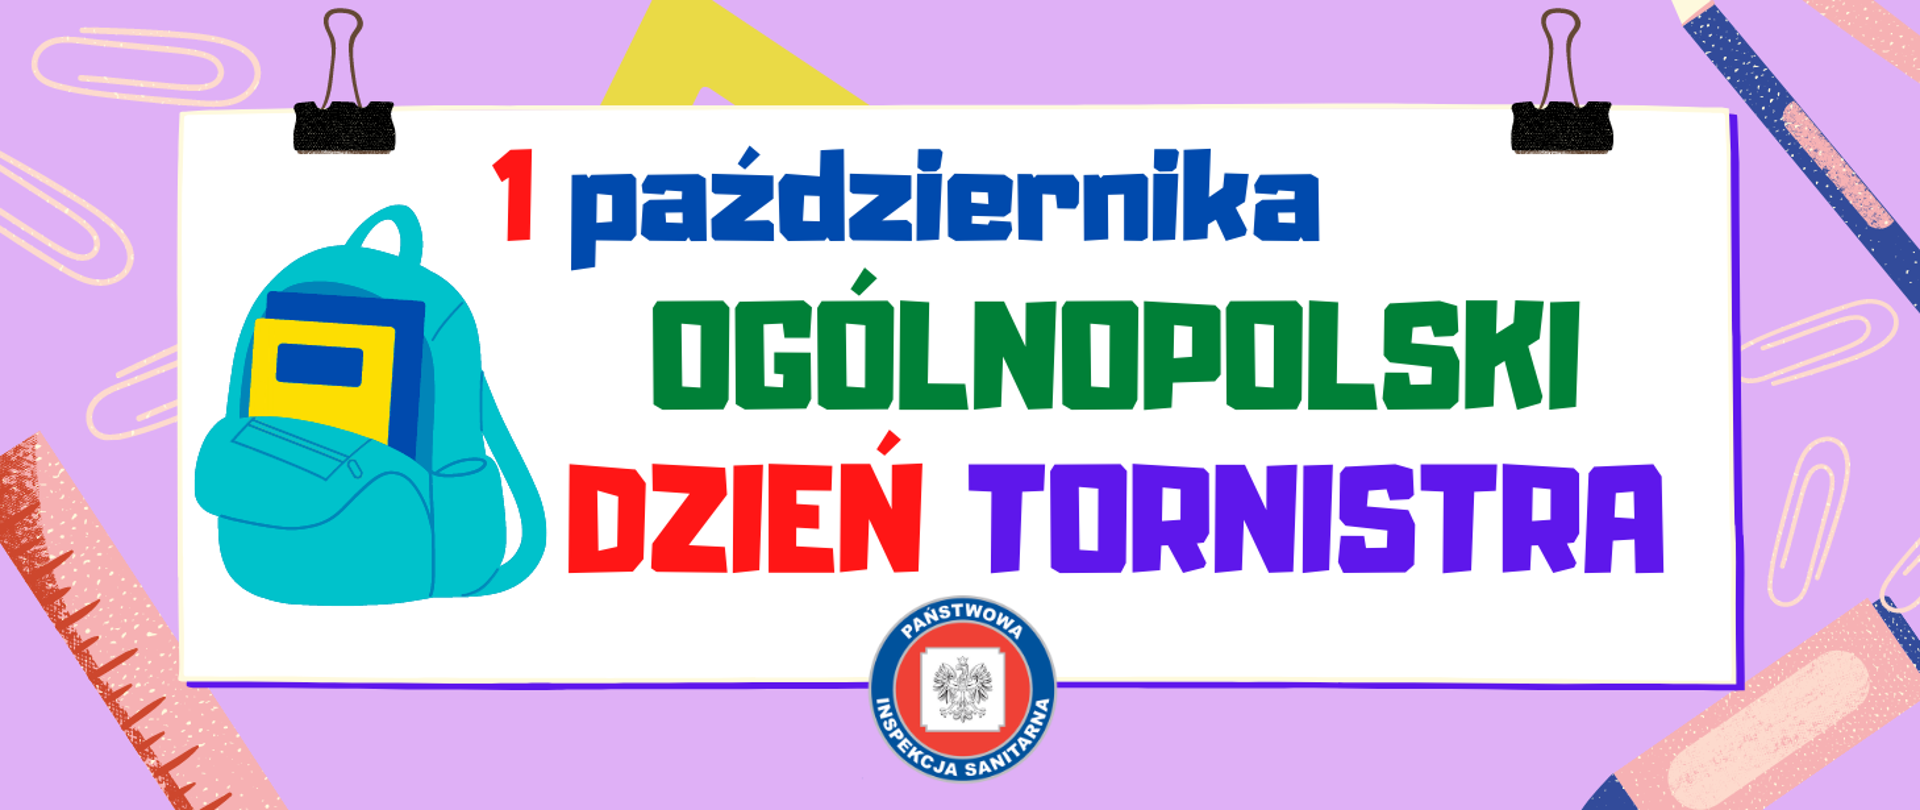 Grafika przedstawia hasło 1 października Ogólnopolski Dzień Tornistra oraz ilustracje tornistra i przyborów szkolnych.